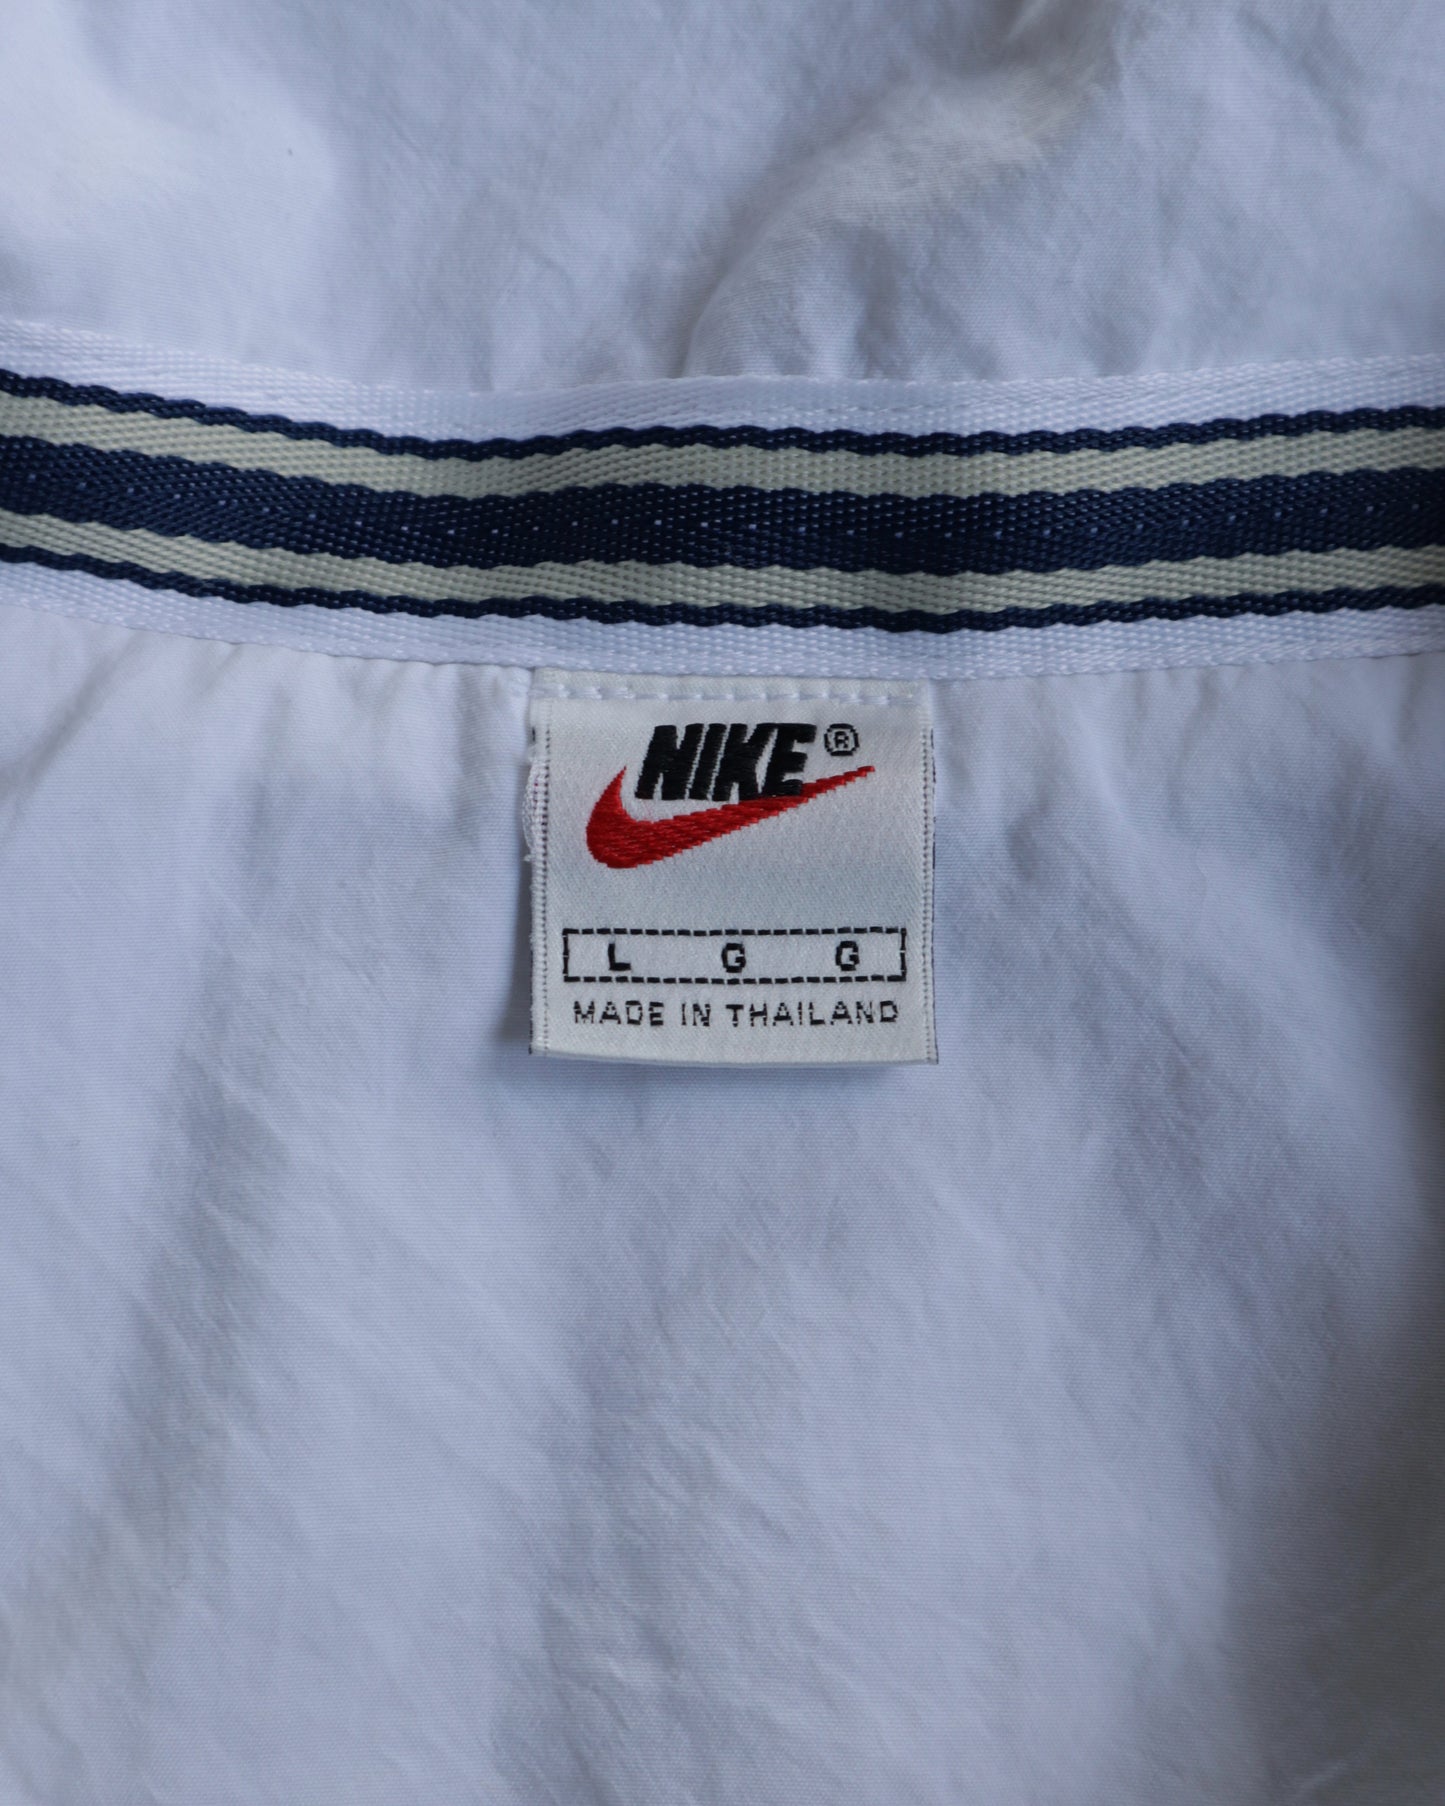 90s Nike Court White Full Zip Vest - L